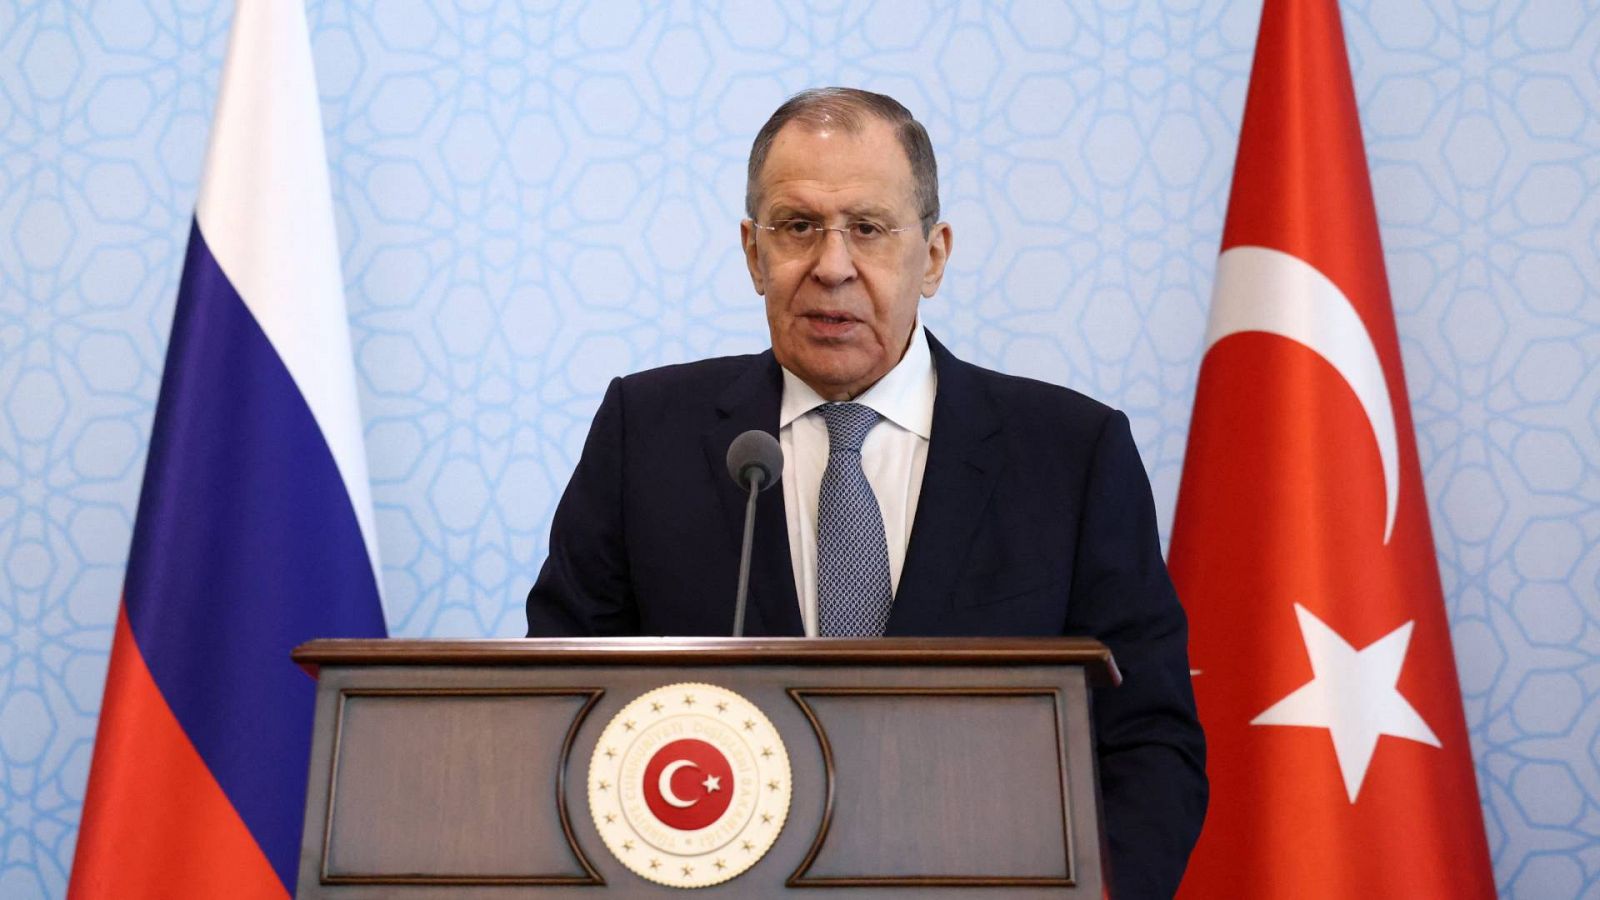 El ministro de Exteriores ruso, Sergei Lavrov, durante la rueda de prensa en Ankara junto a su homólogo turco